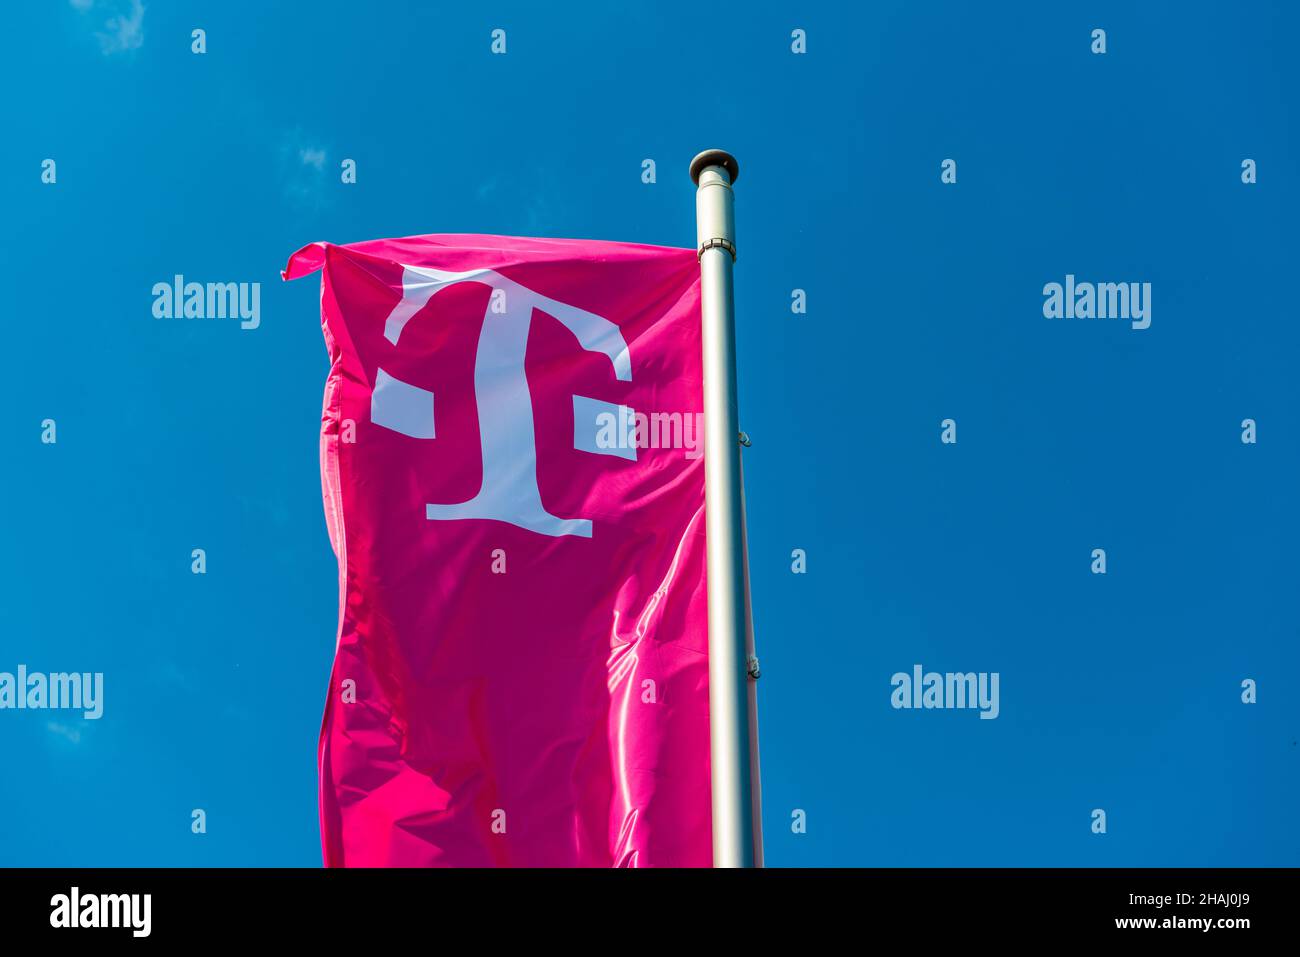 Deutsche Telekom Fahne magenta vor blauem Himmel Foto de stock